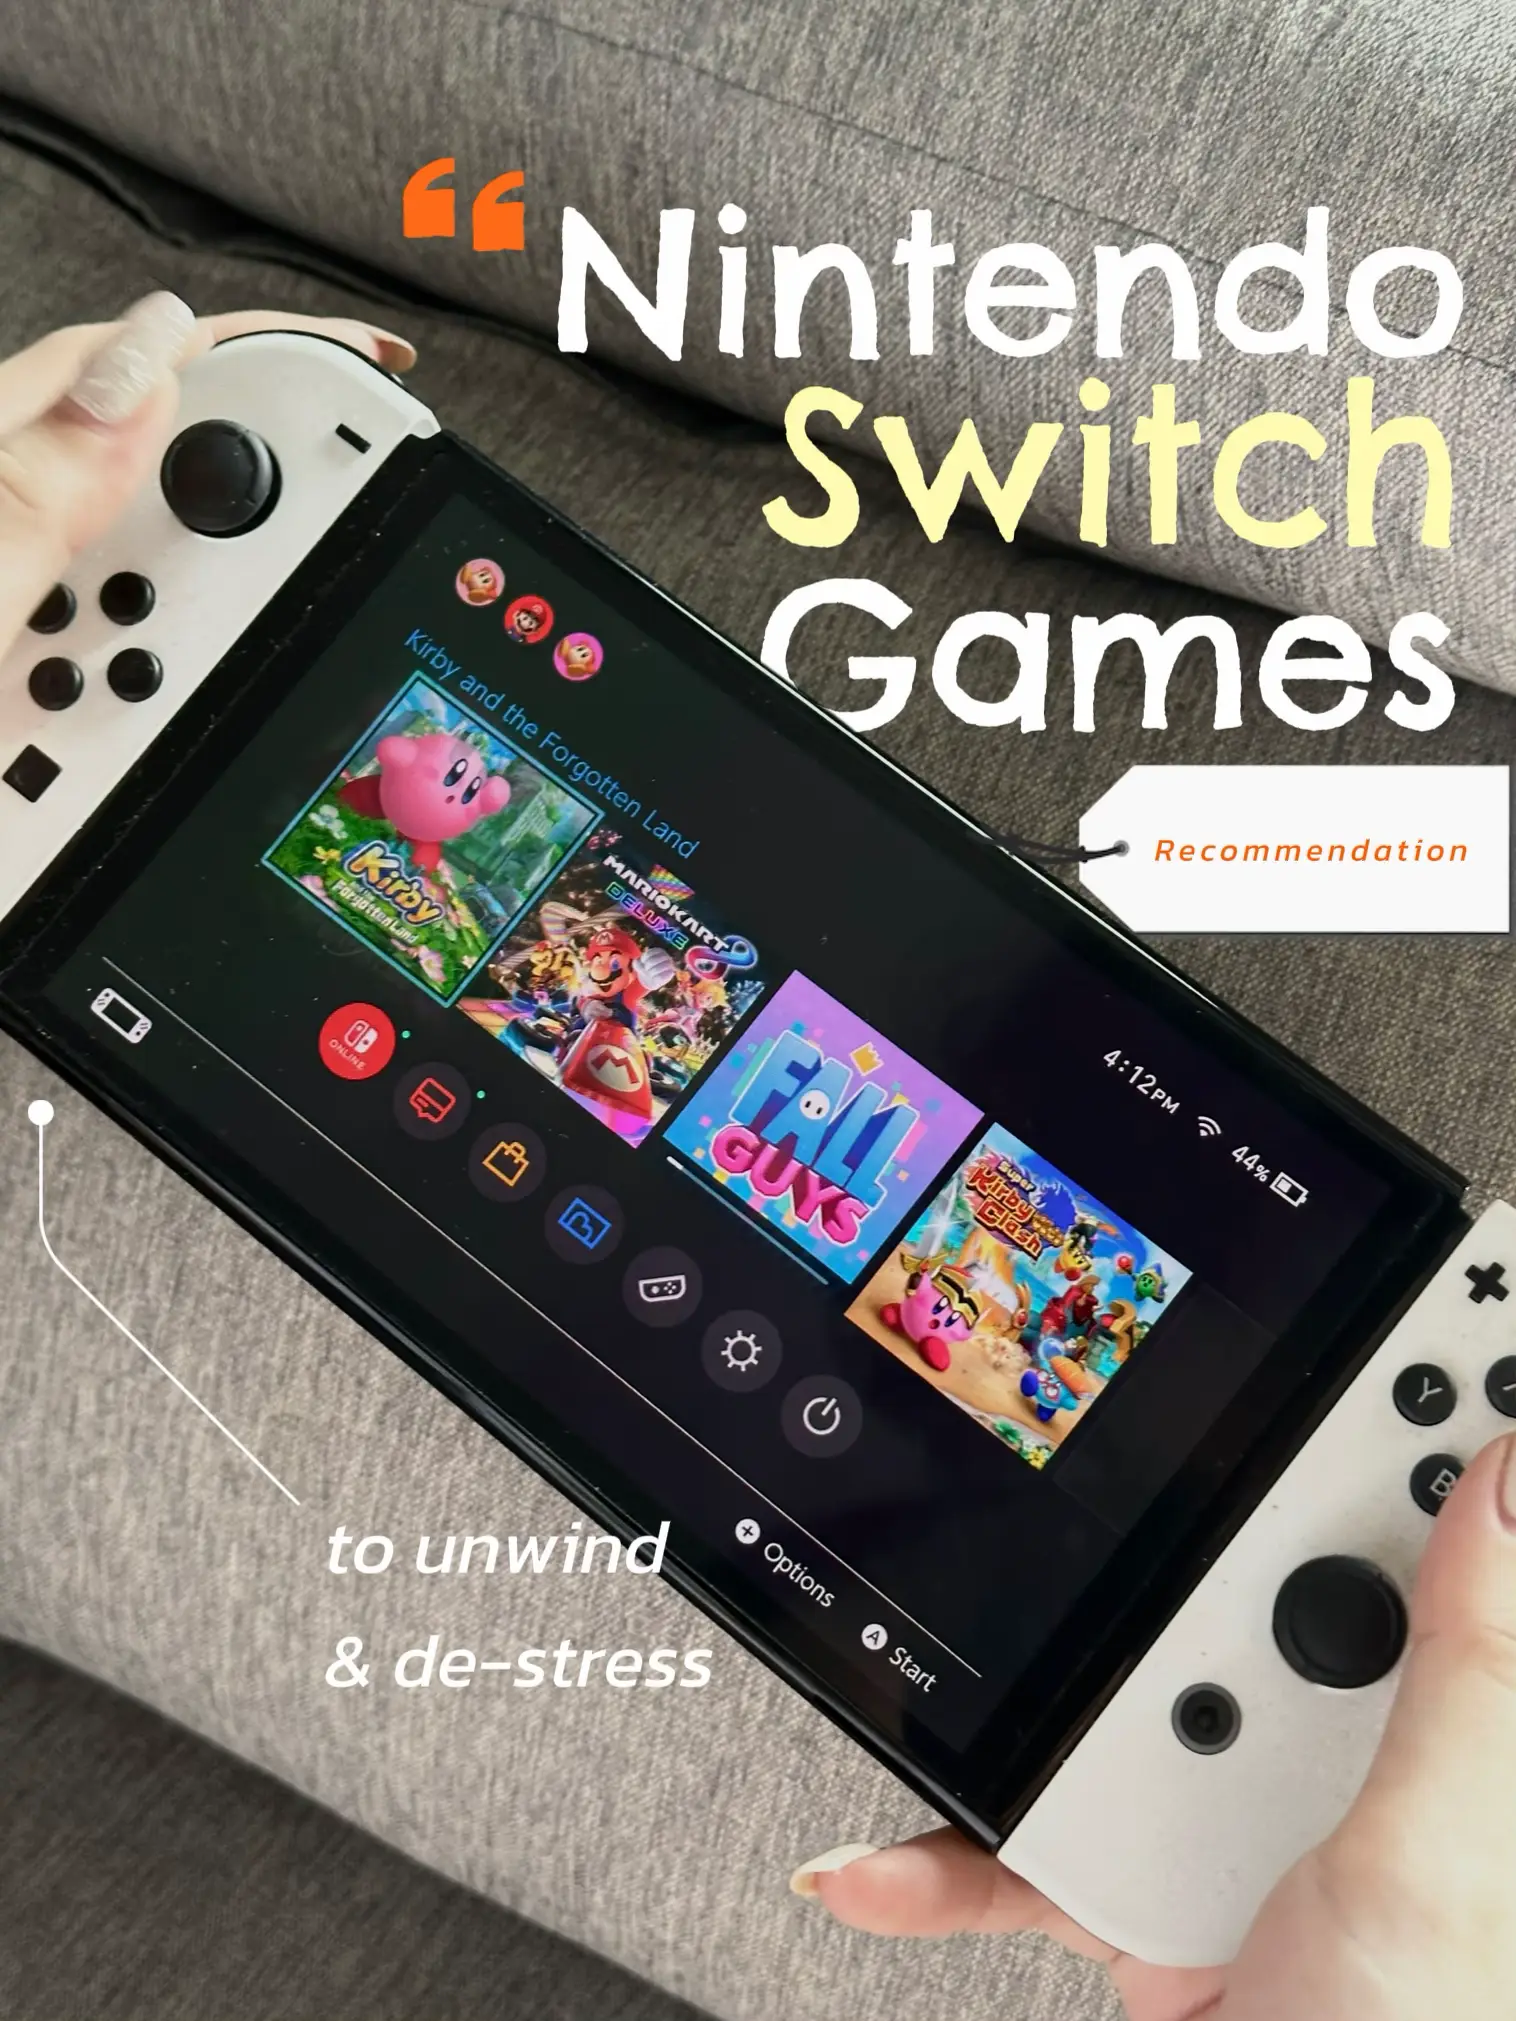 Ofertas do dia: jogos de Nintendo Switch com até 44% off! - Olhar